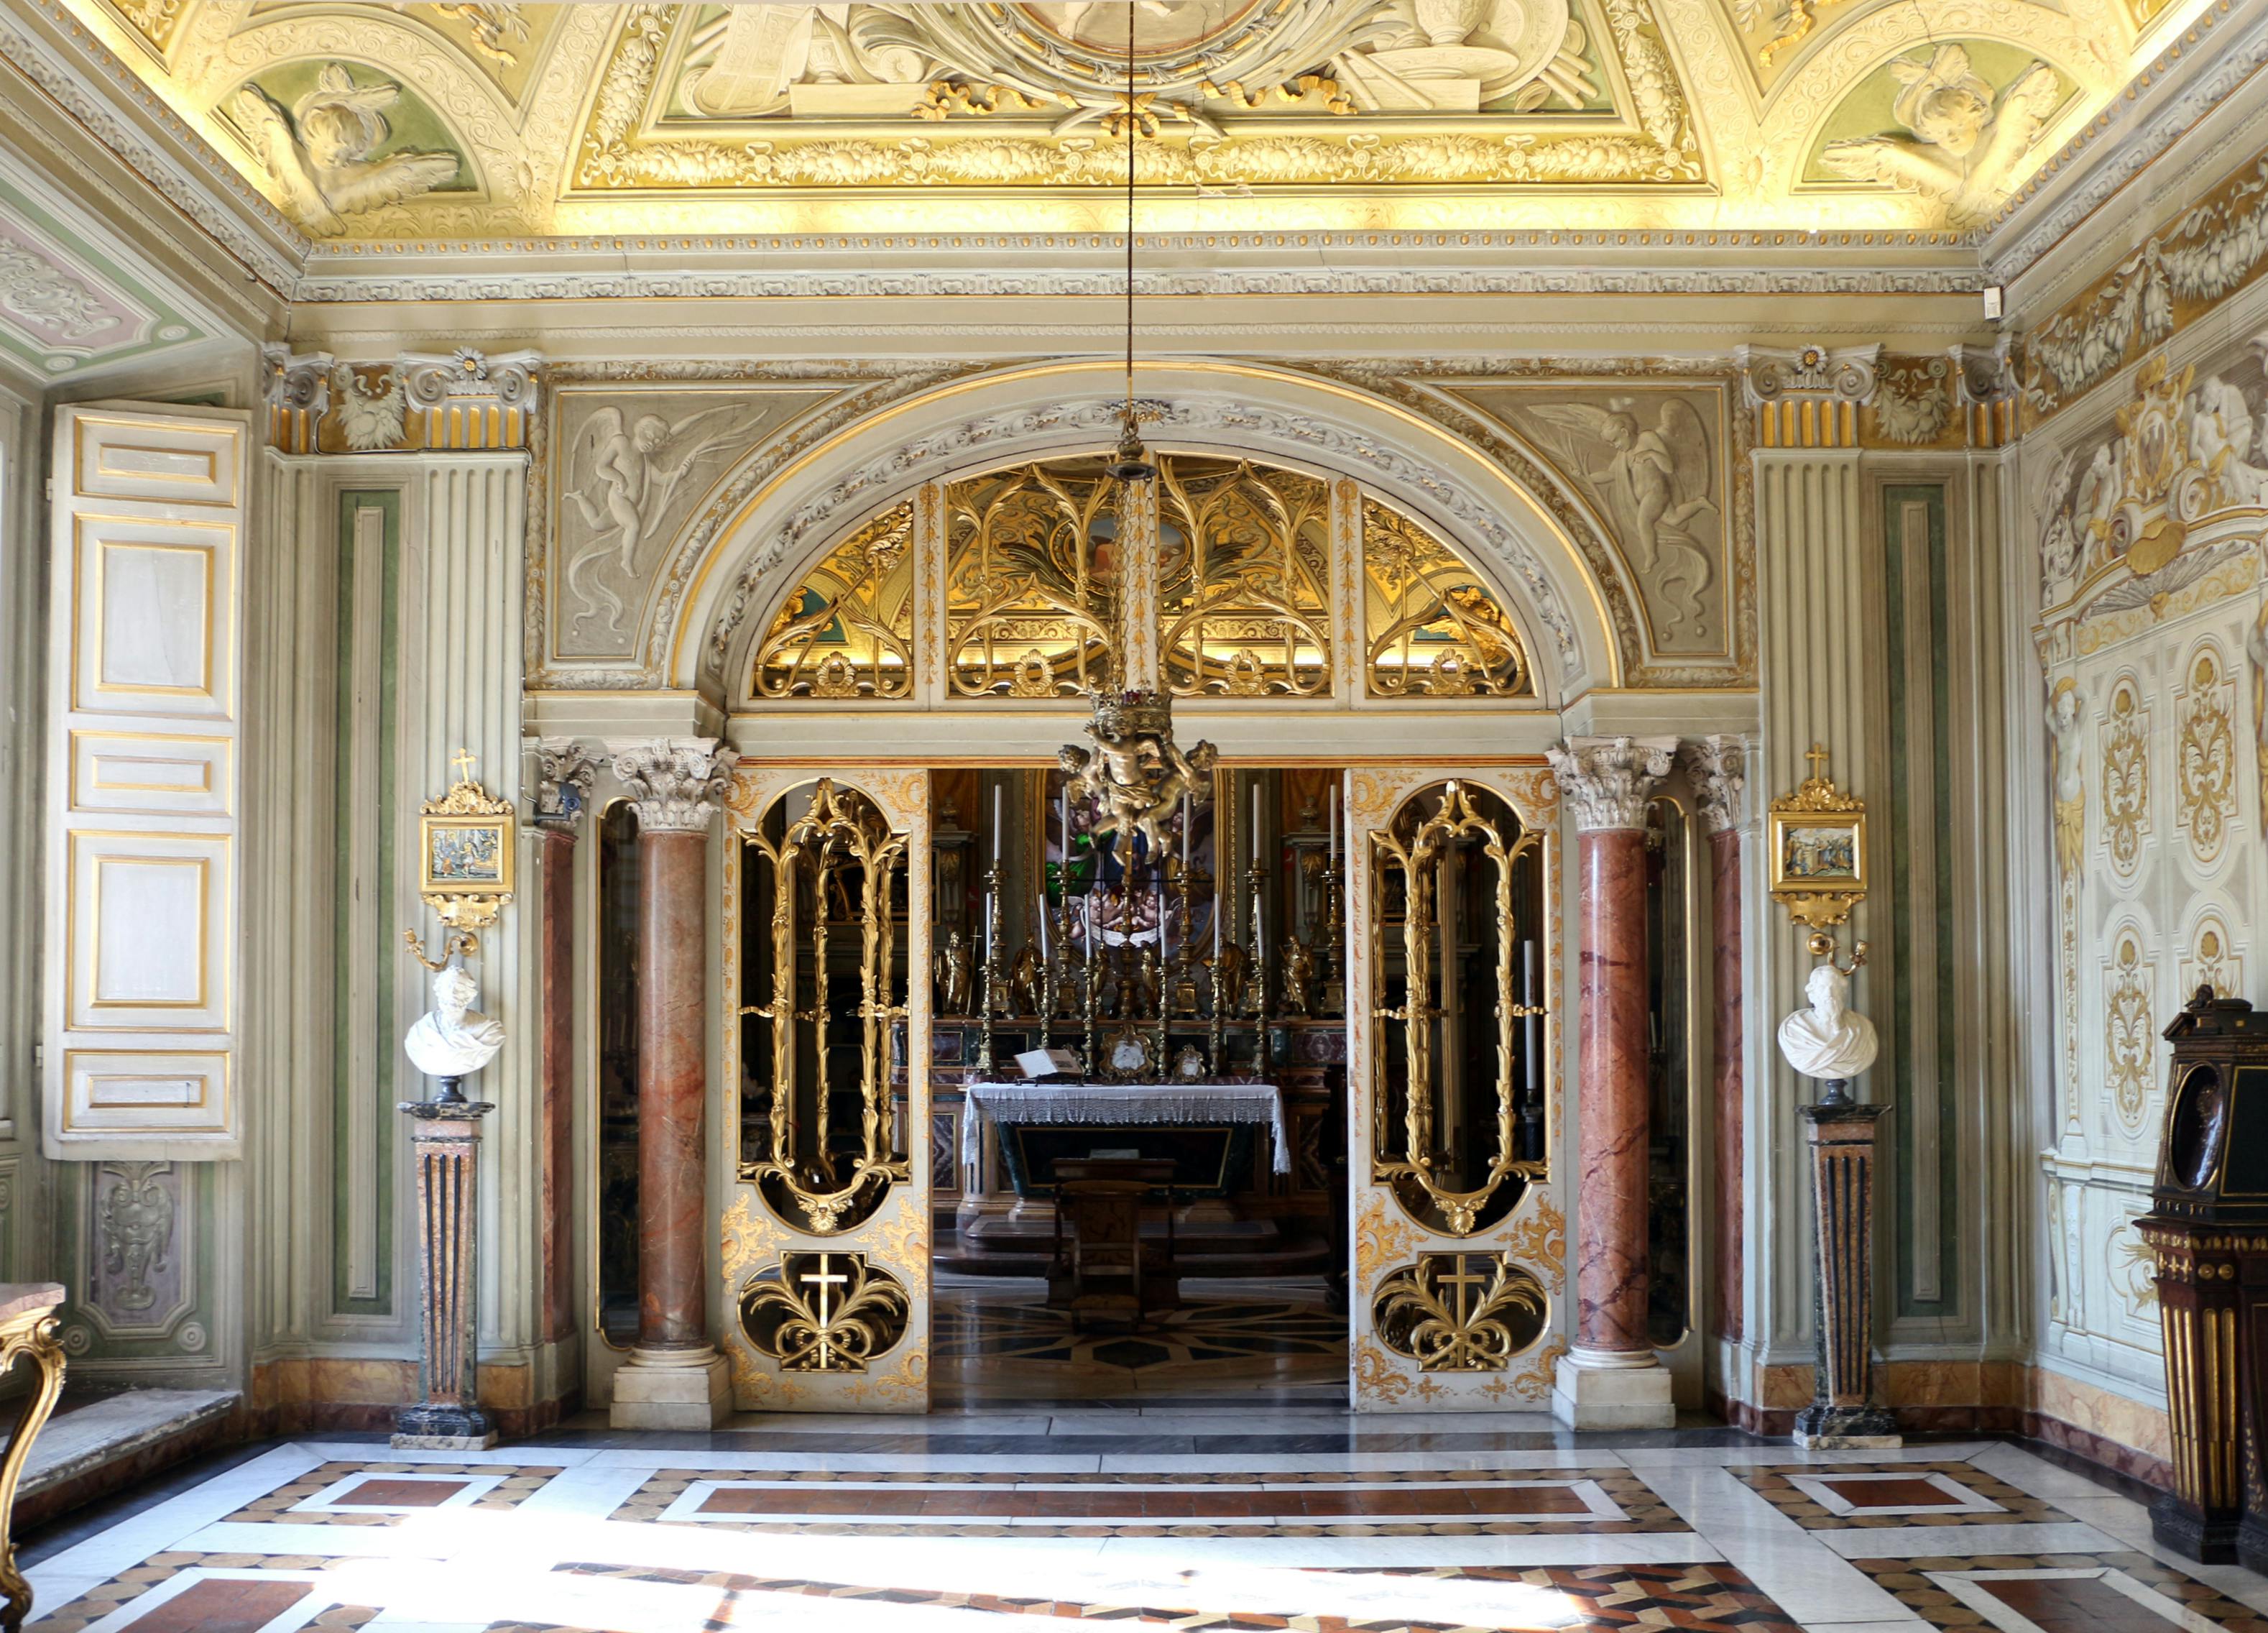 Palazzo_doria_pamphili,_cappella_di_carlo_fontana,_1689-91,_01 - Copia.jpg